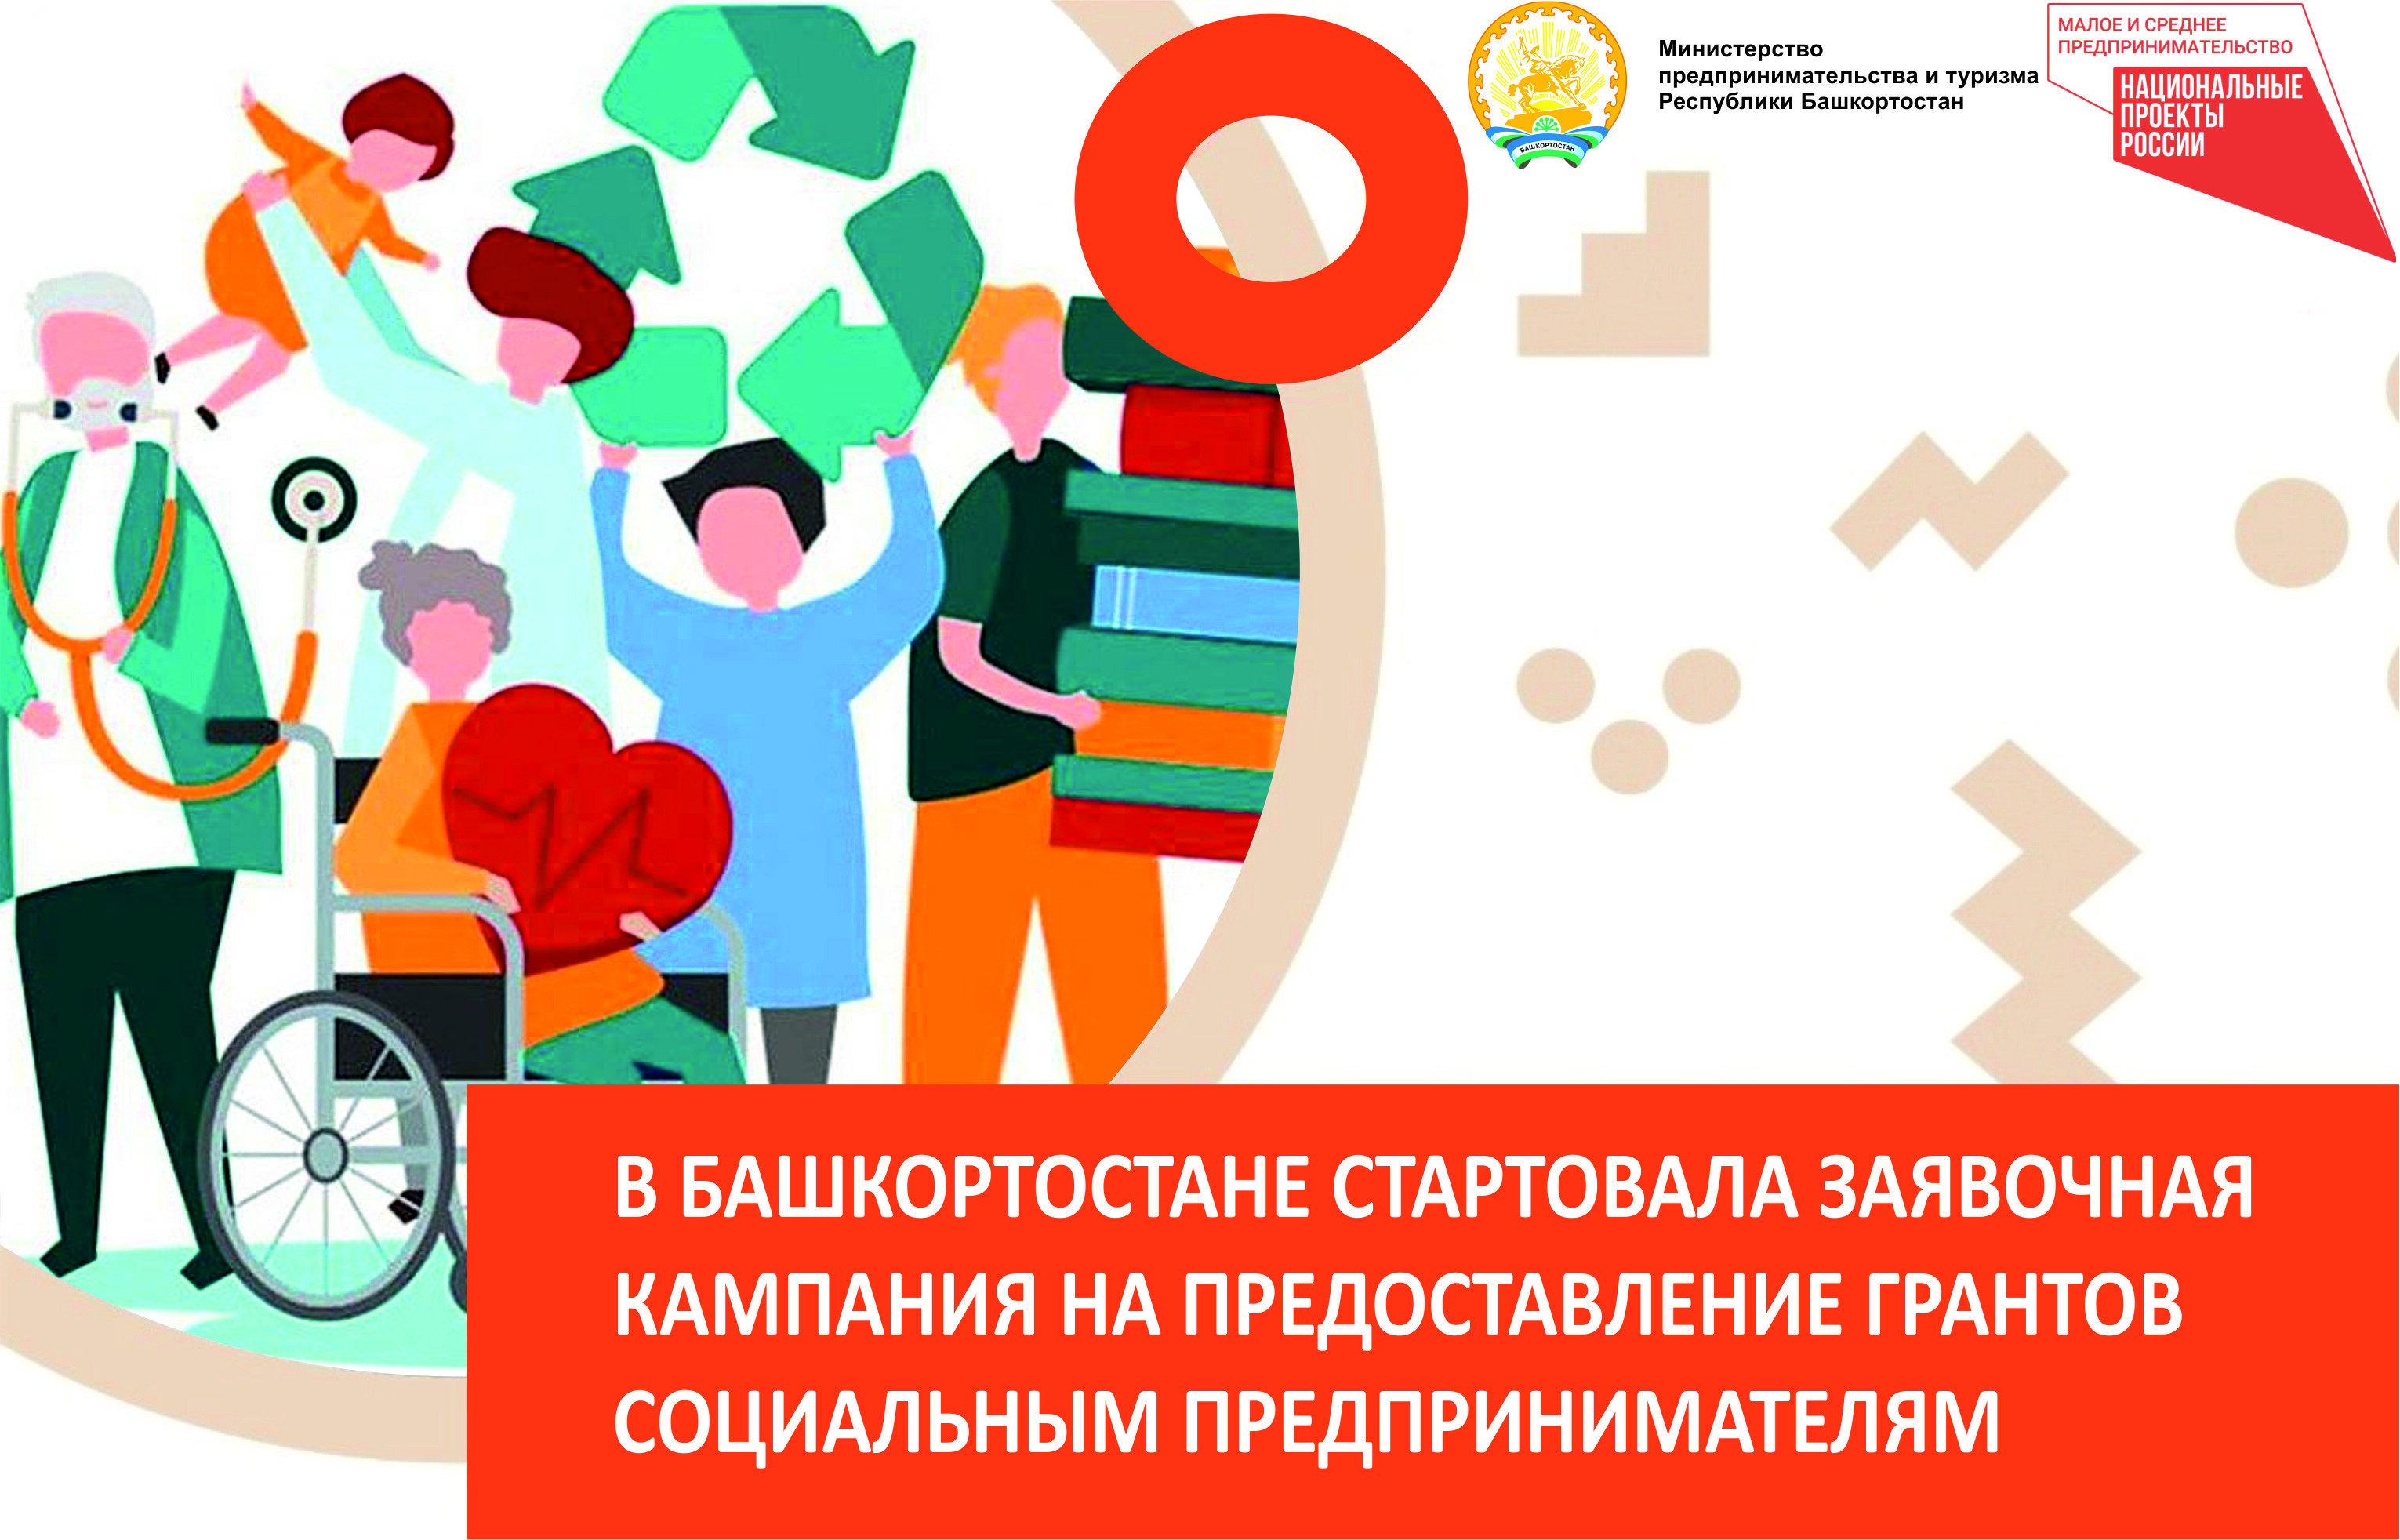 В Башкортостане стартовала заявочная кампания на предоставление грантов социальным предпринимателям